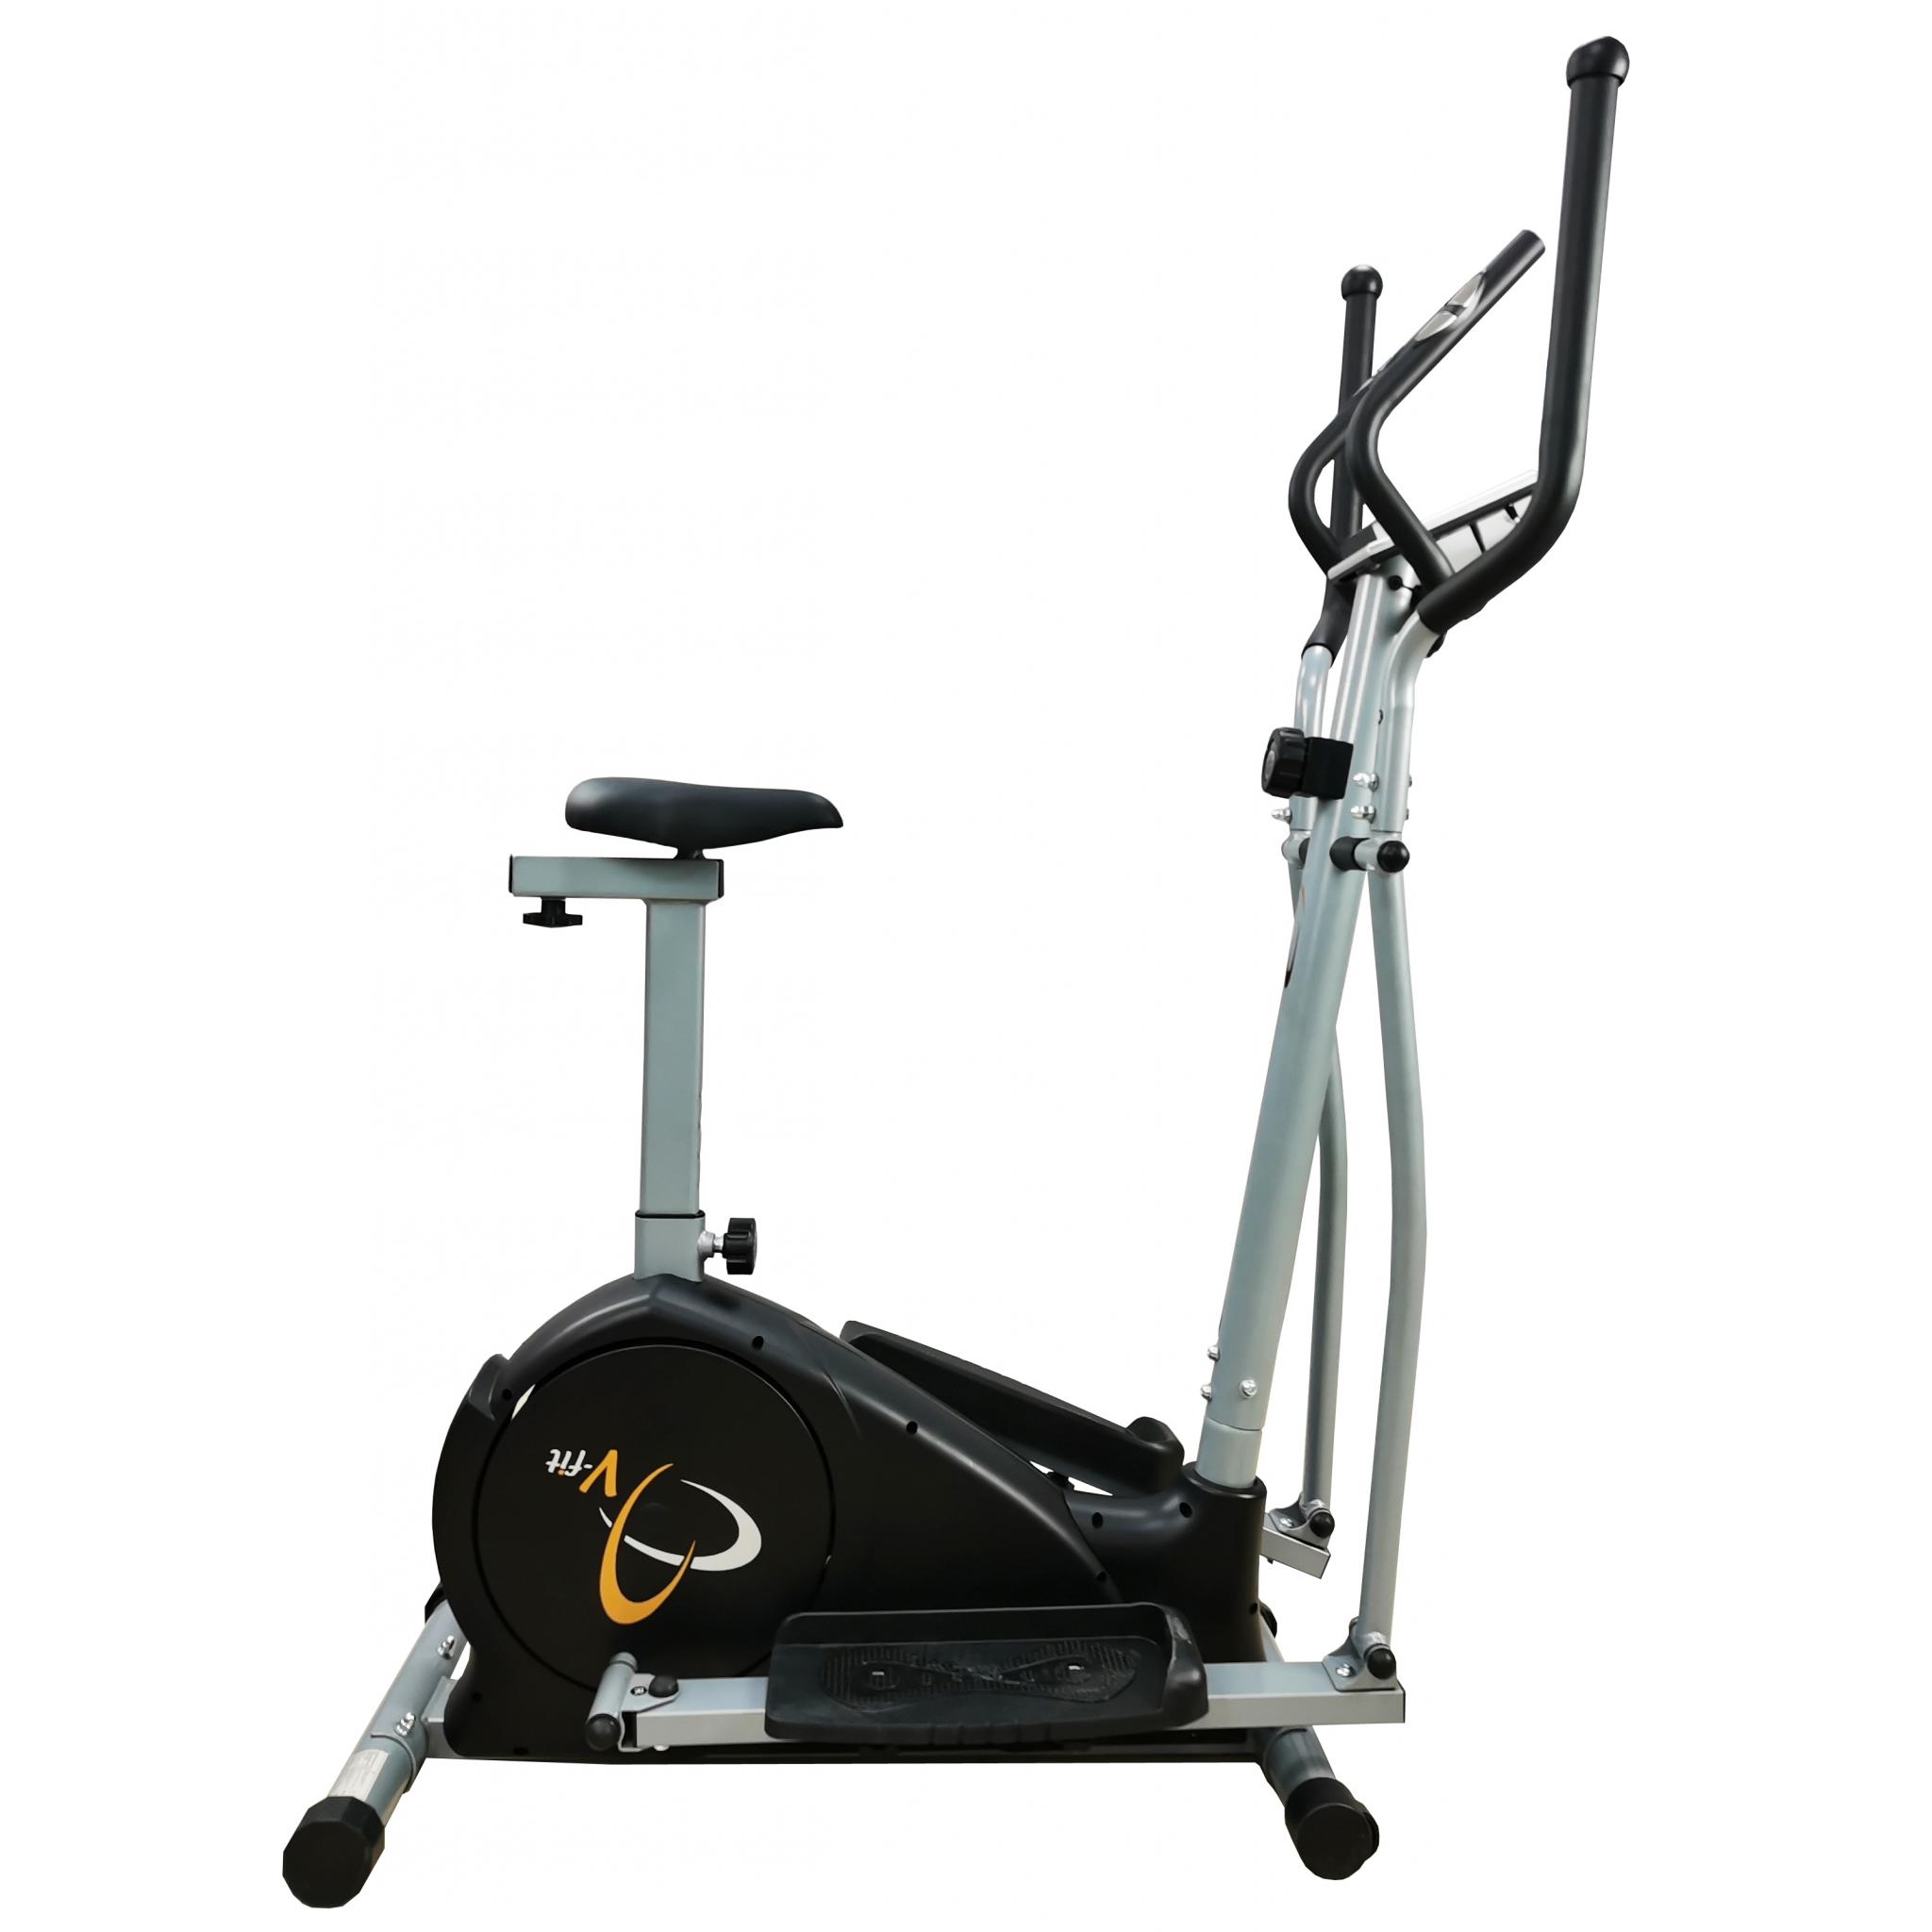 v fit elliptical trainer